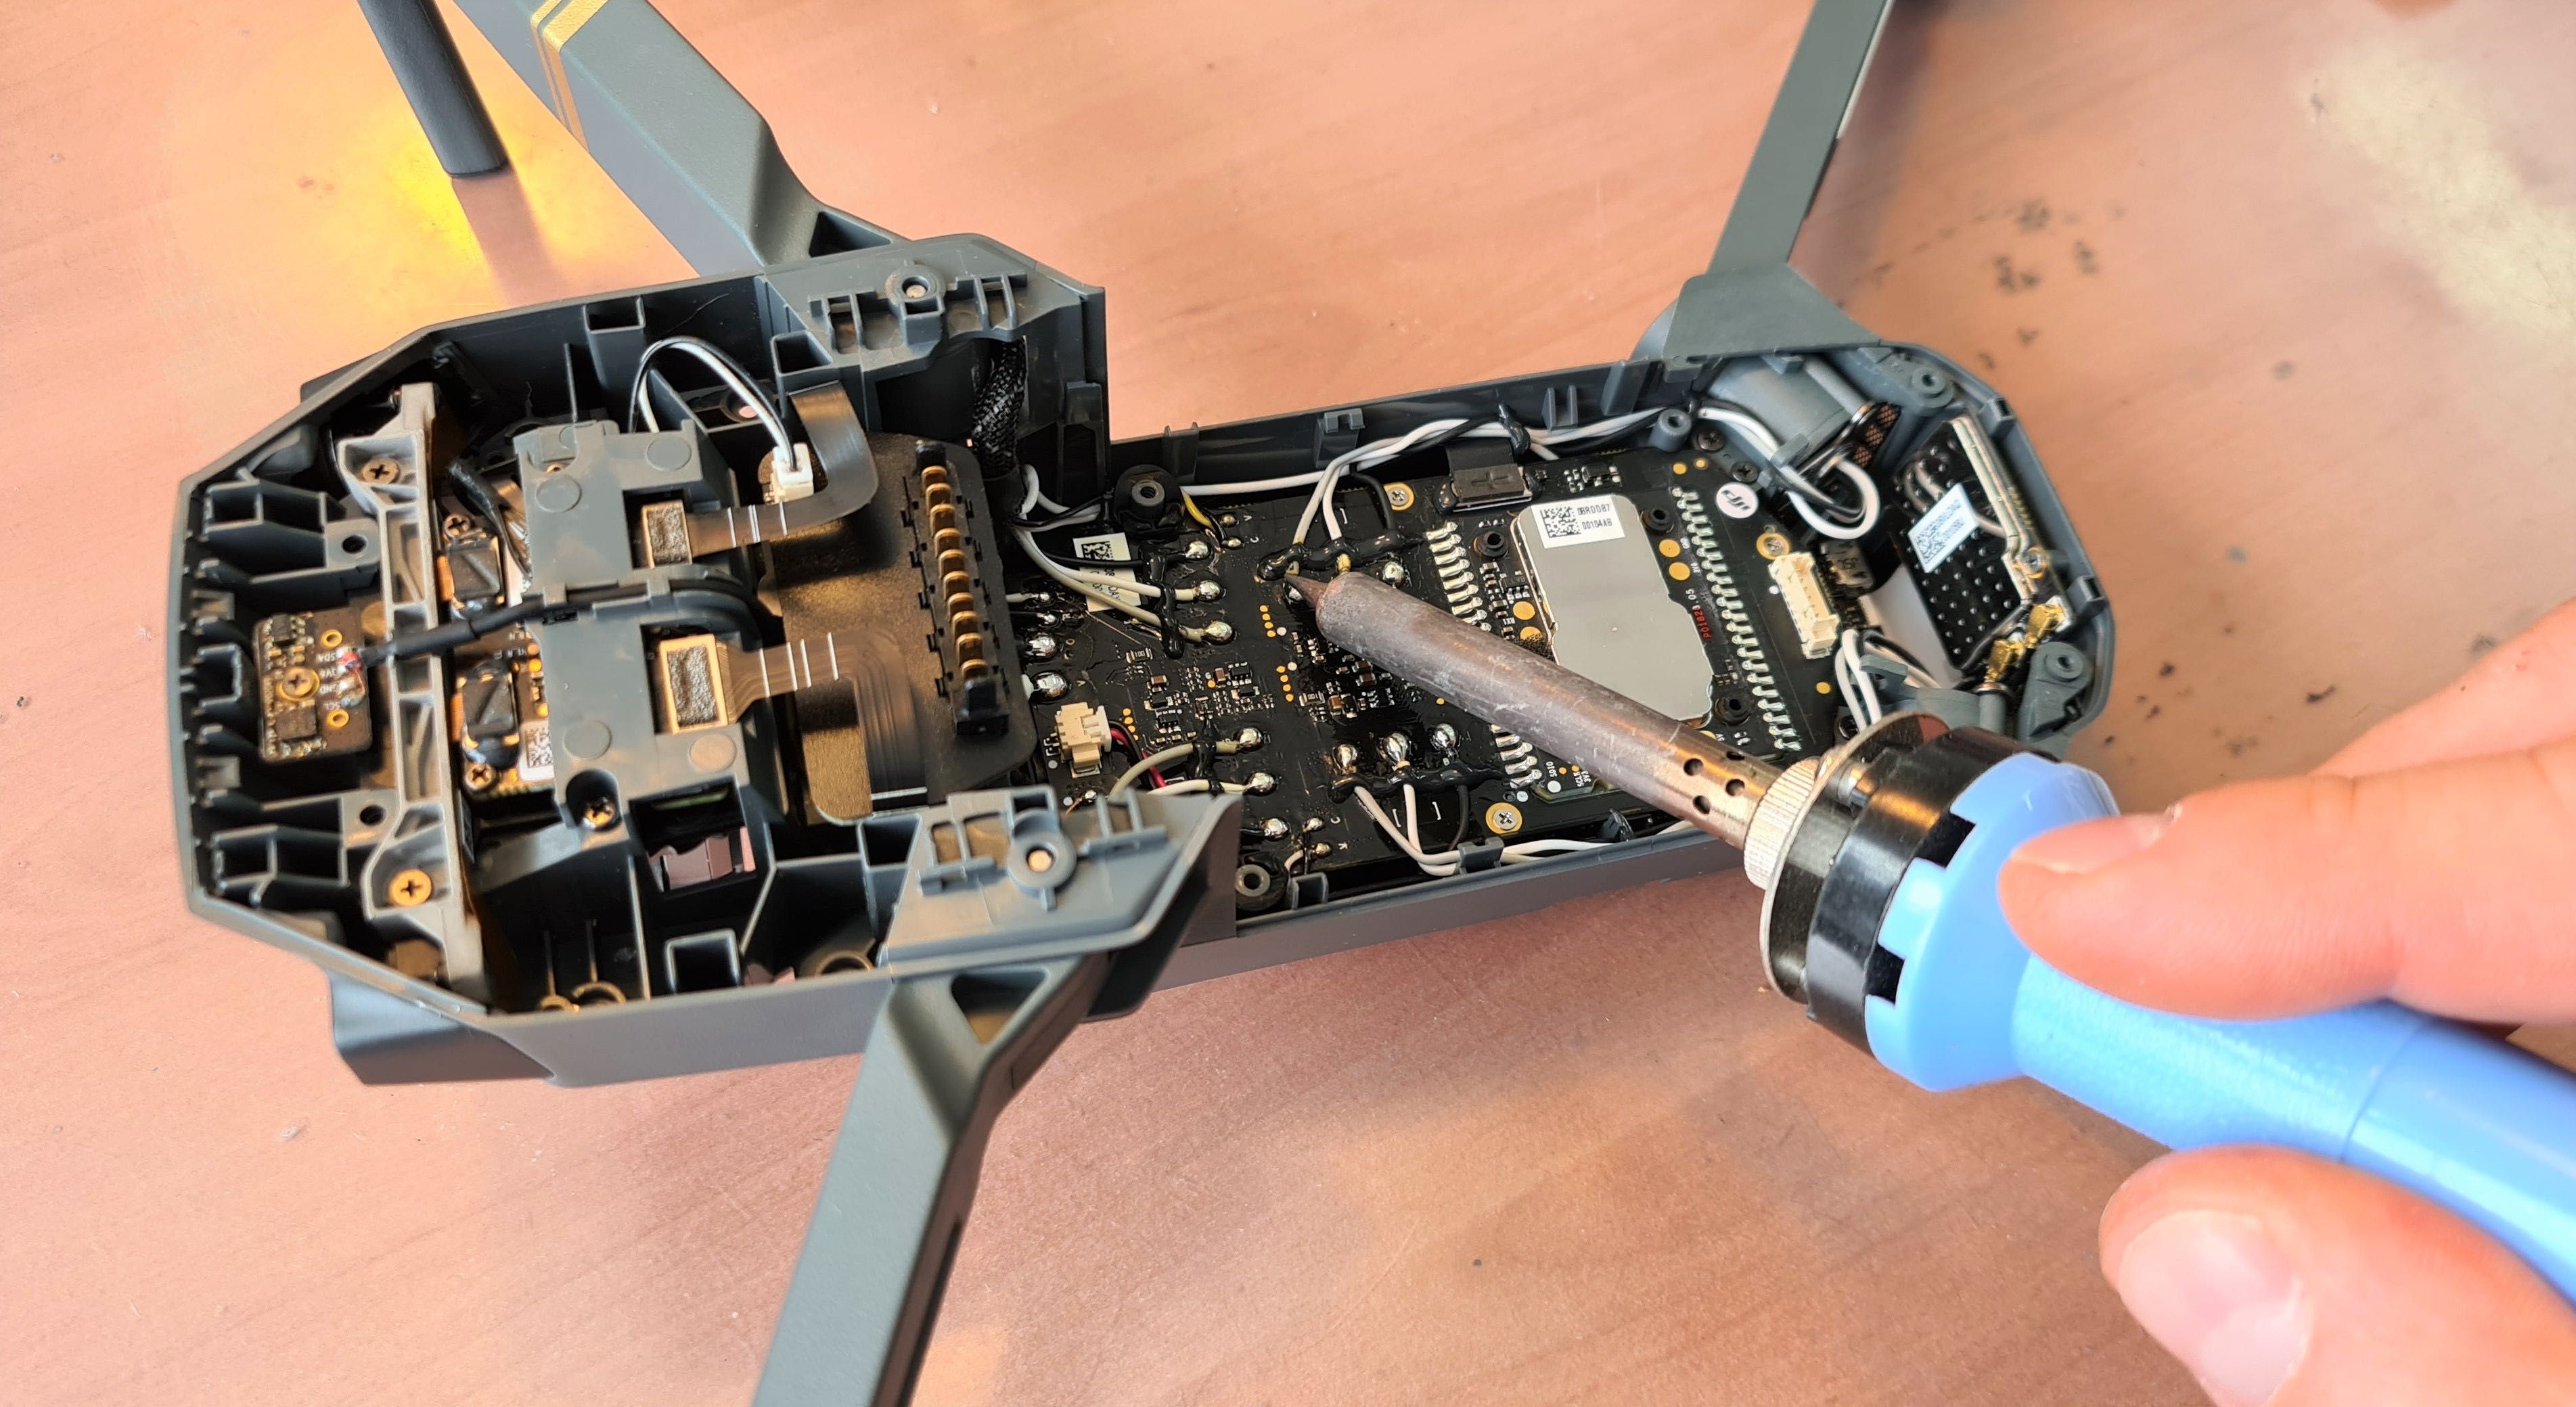 Repară Rapid și Zboară Din Nou - Service Drone DJI!